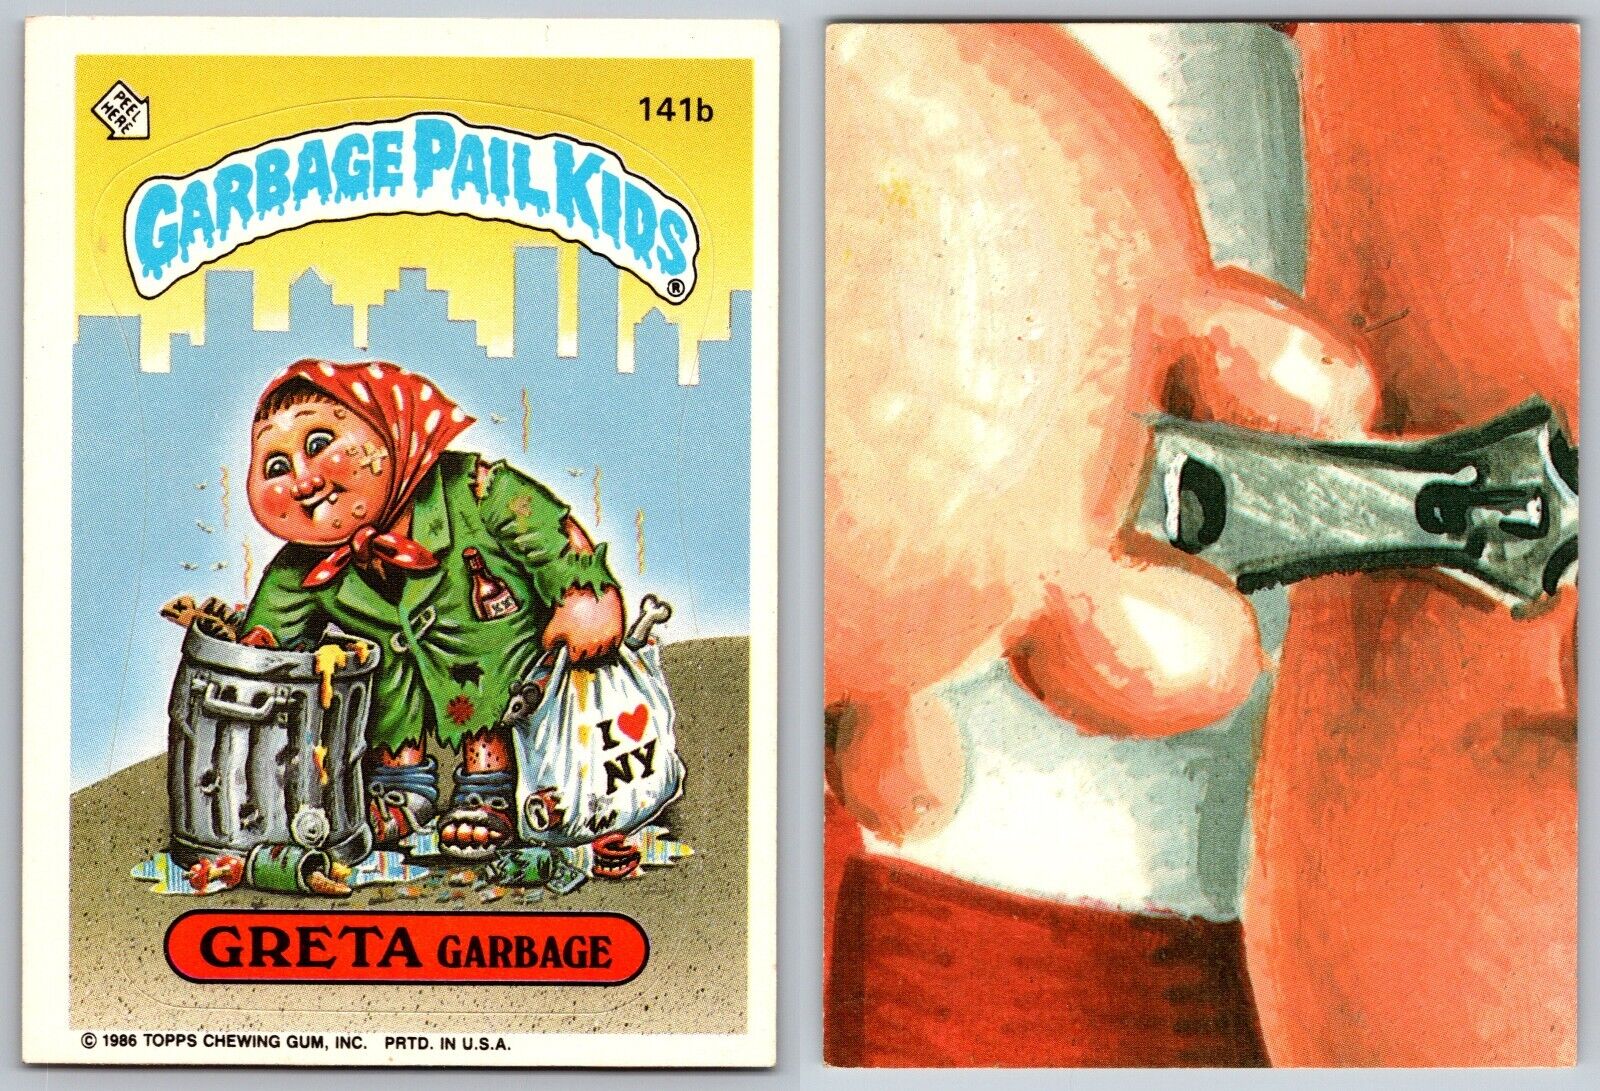 1986 Topps Garbage Pail Kids GPK Series 4 GRETA Garbage 141b Vintage Card NM